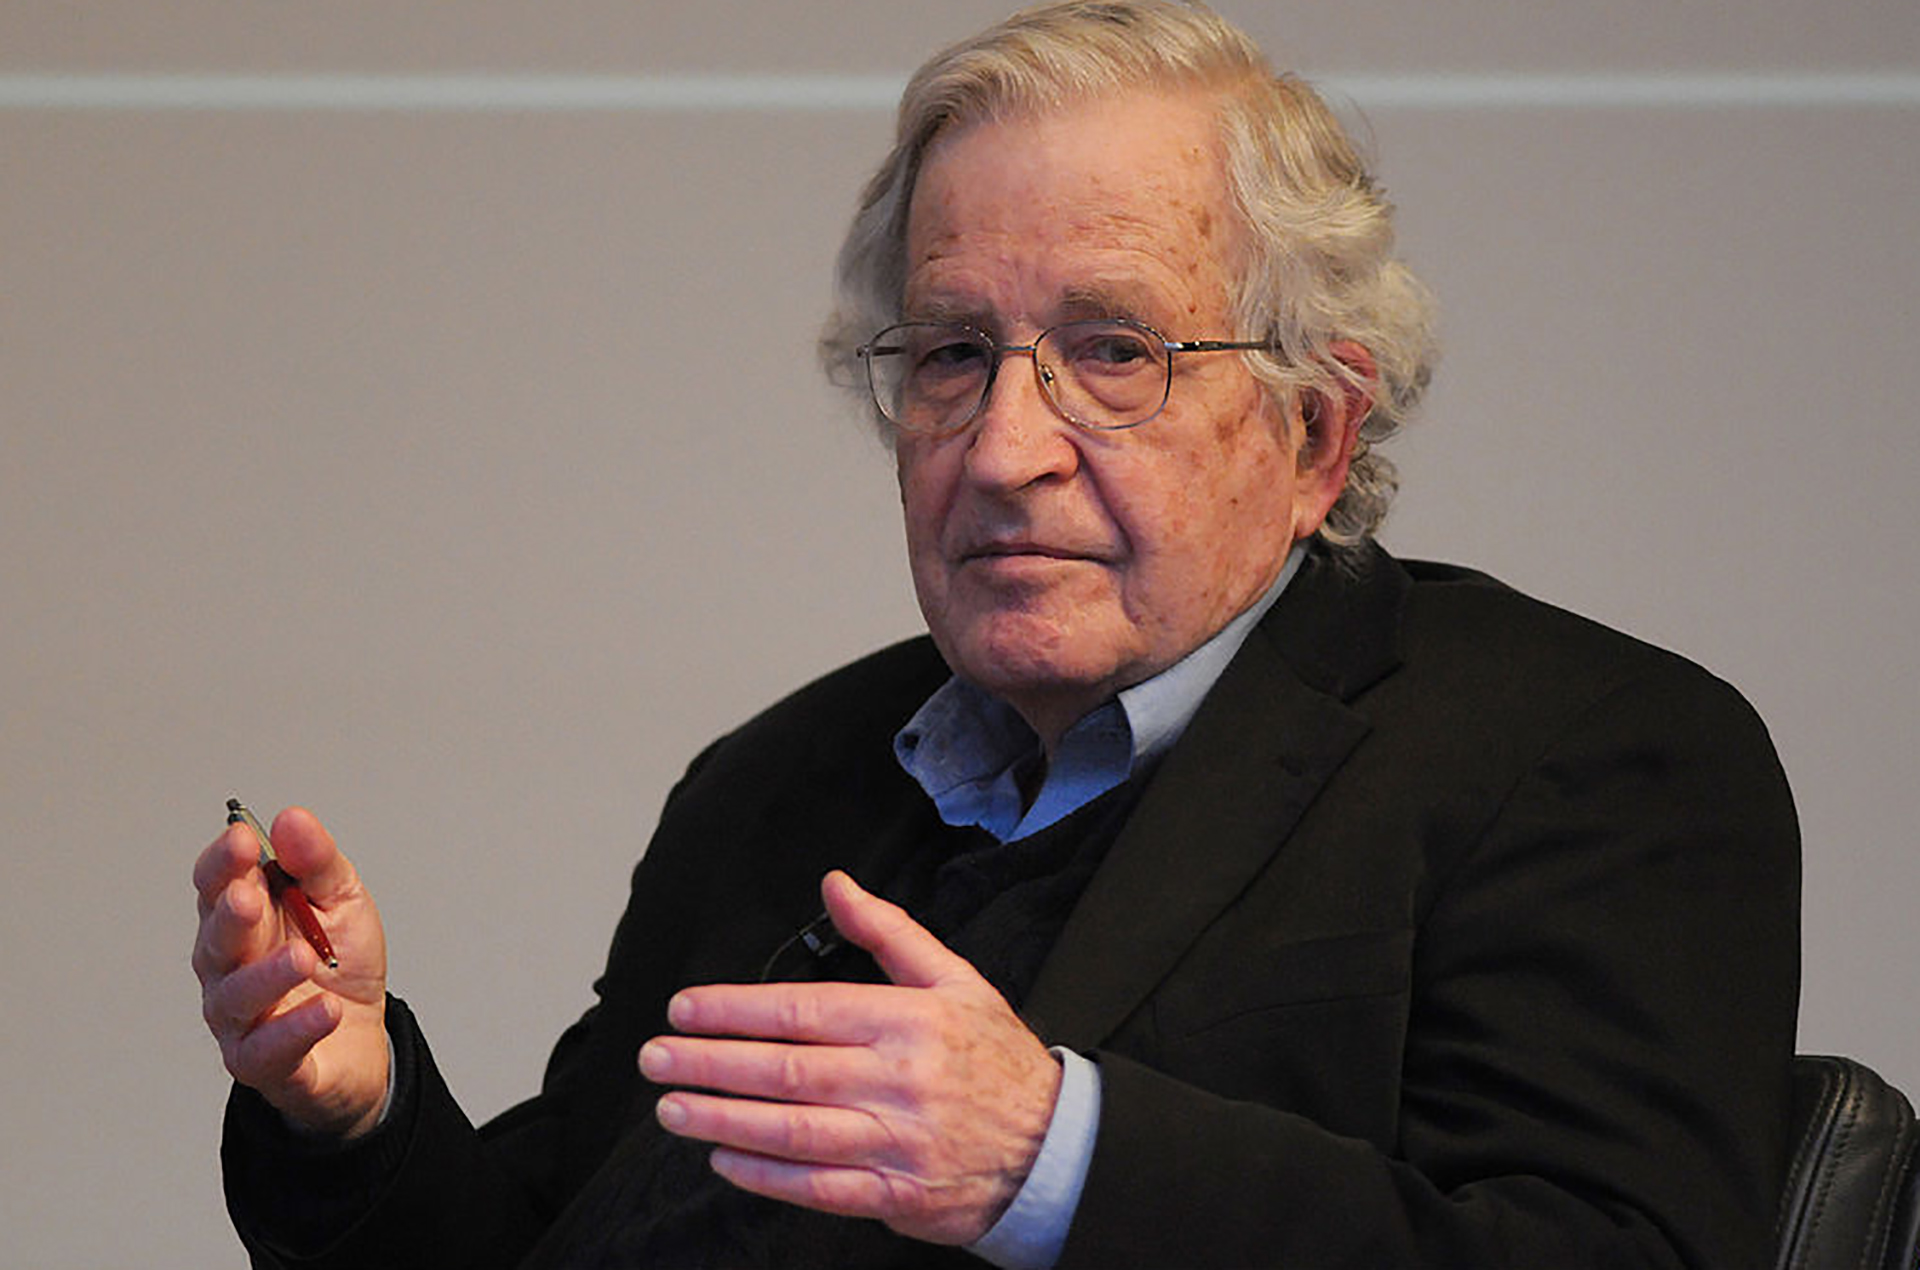 Requiem para o Sonho Americano de Noam Chomsky - Bokay